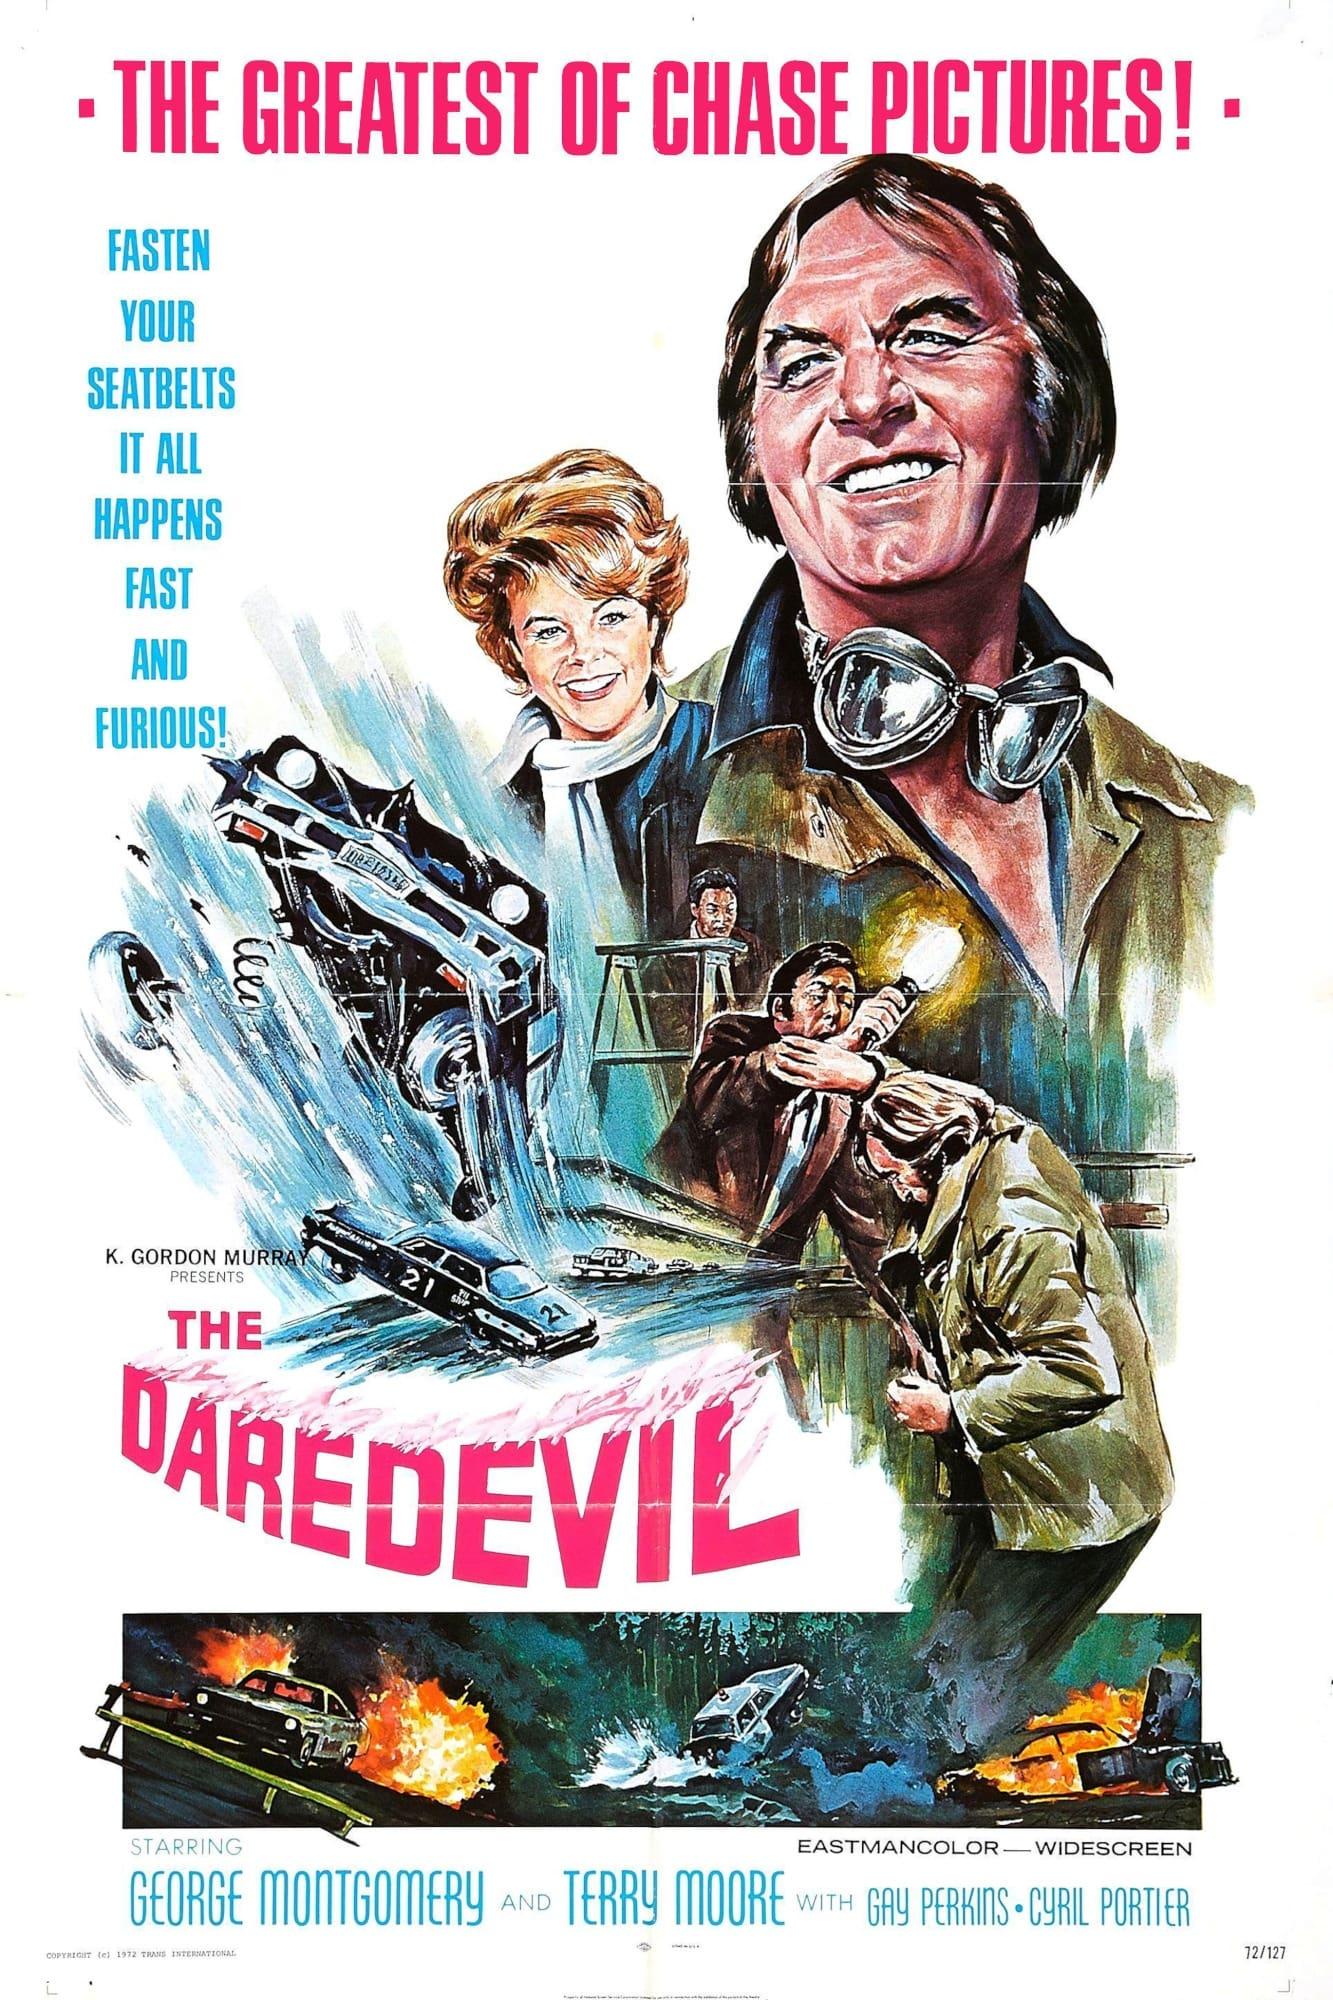 The Daredevil poster